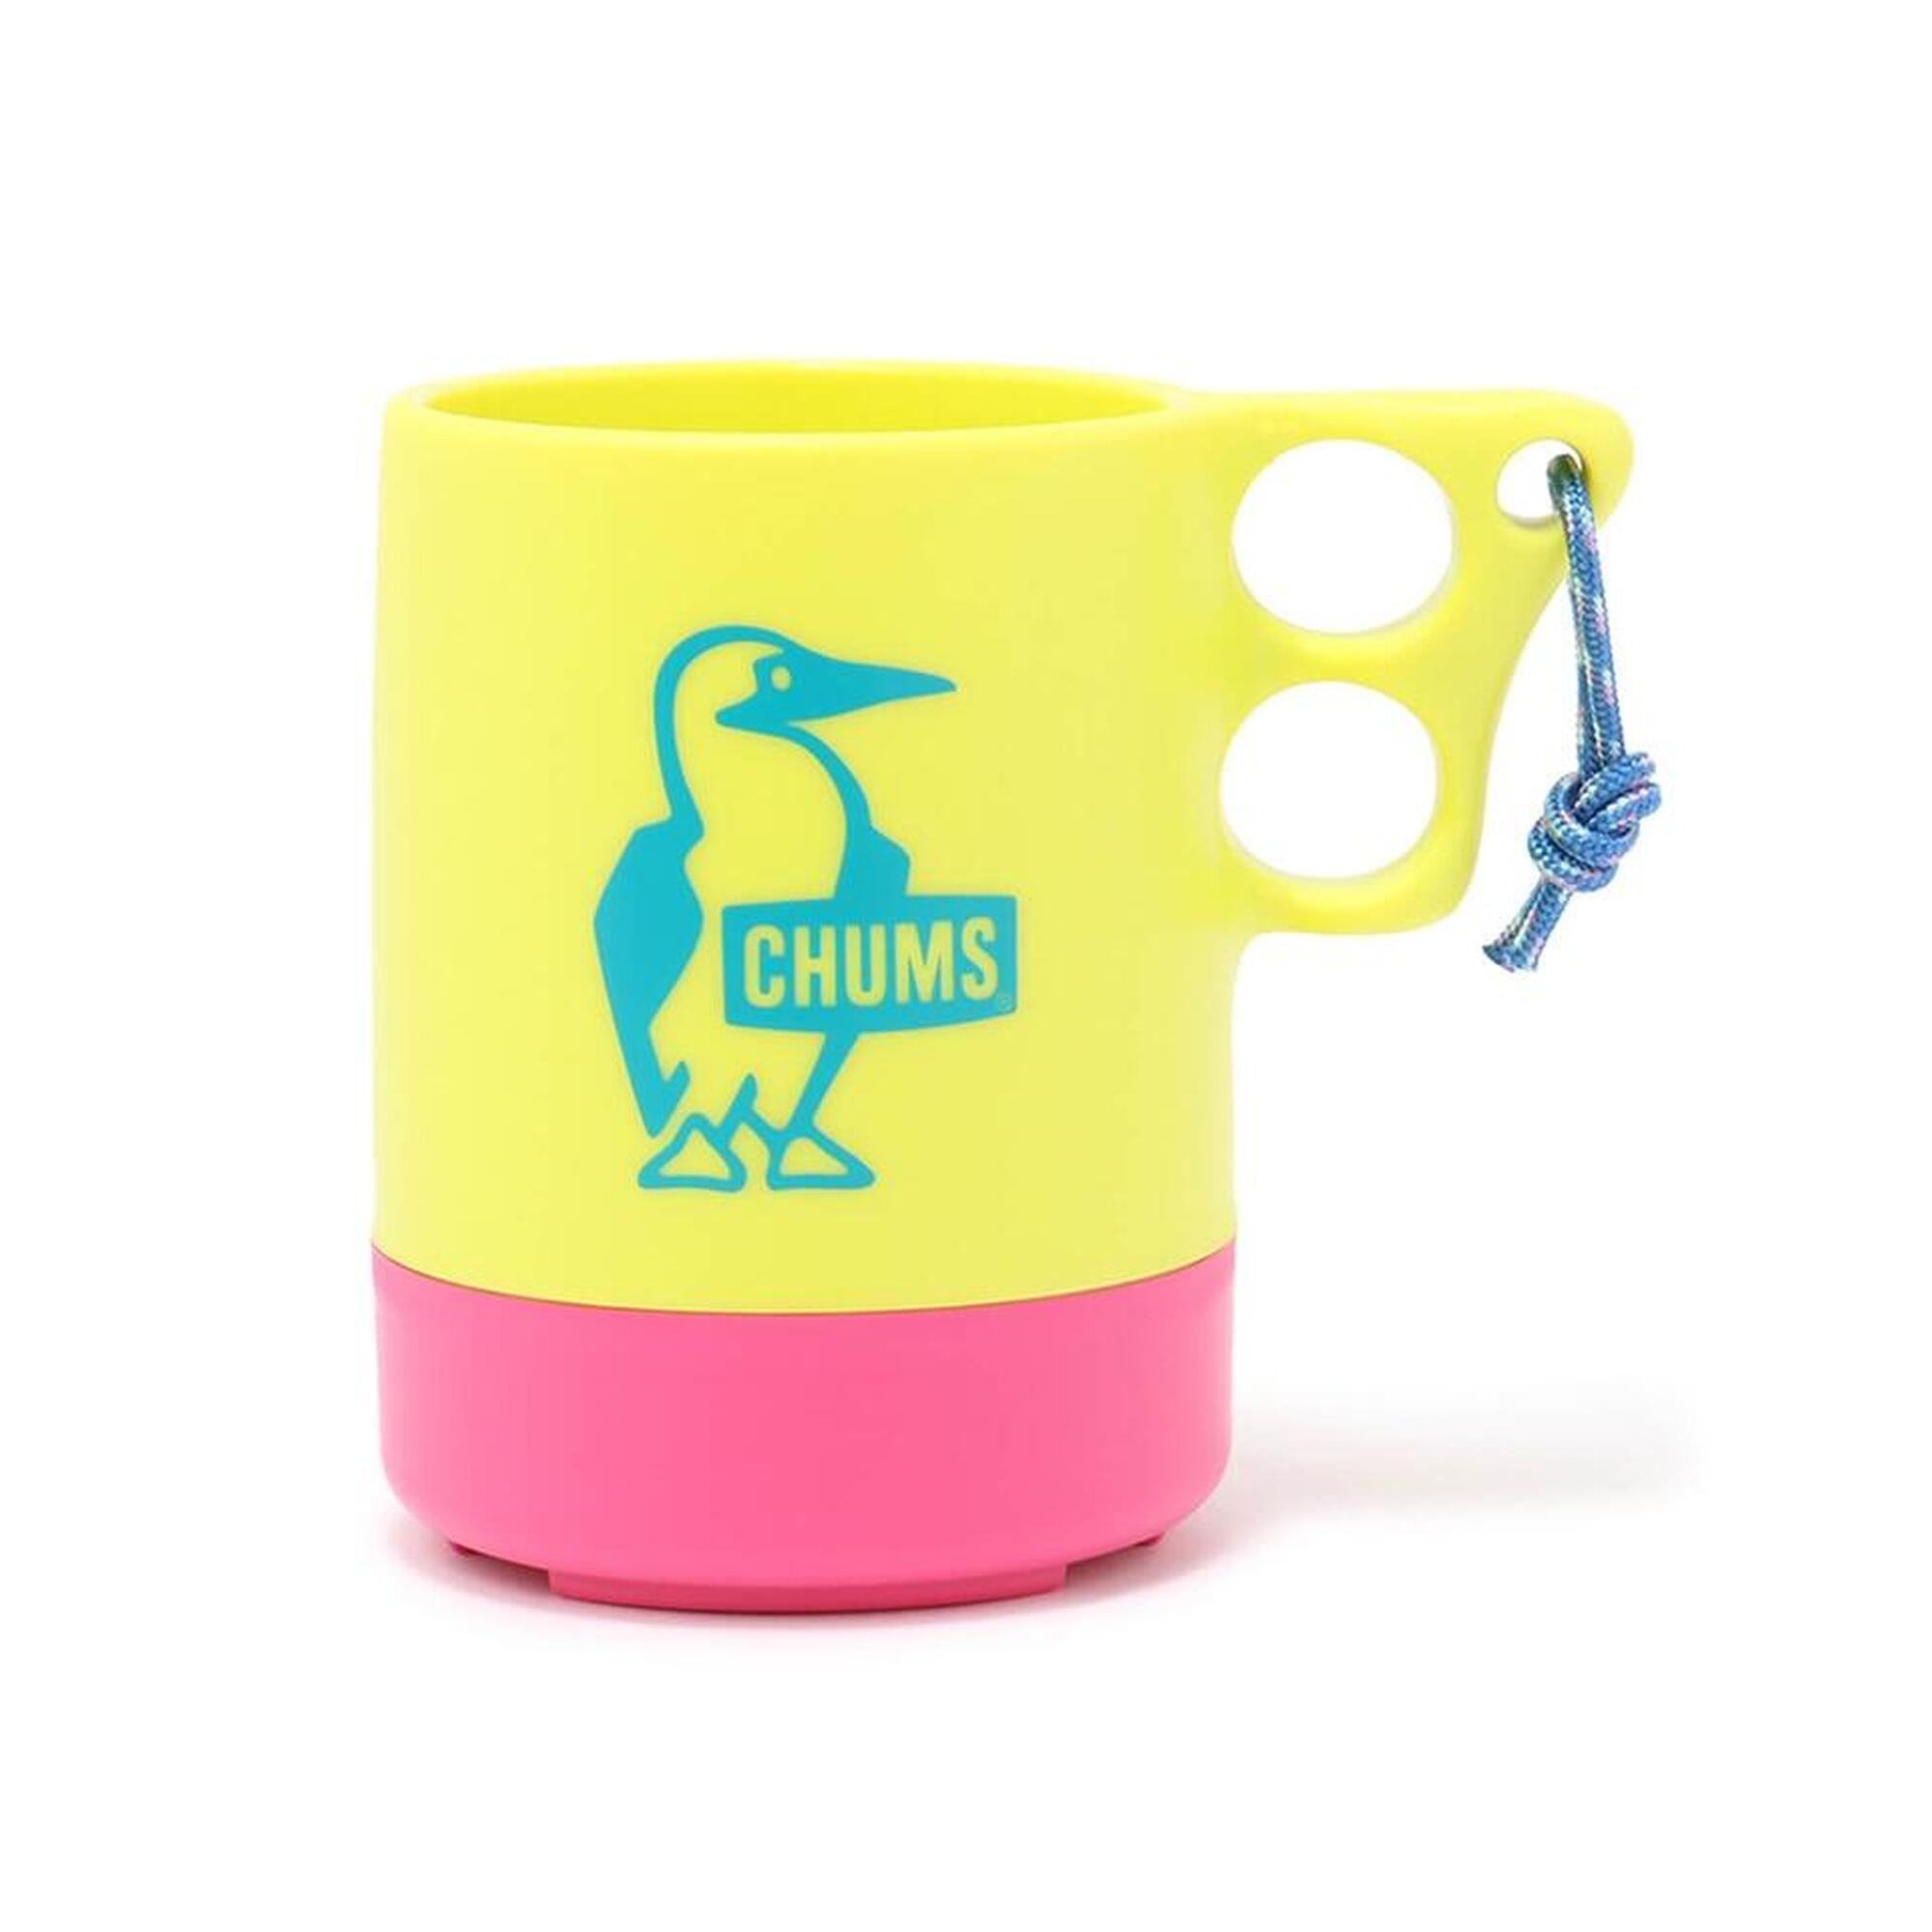 Camper Mug Cup 露營杯 CH62-1620-M094 (550ml) - 檸檬黃 x 粉紅色